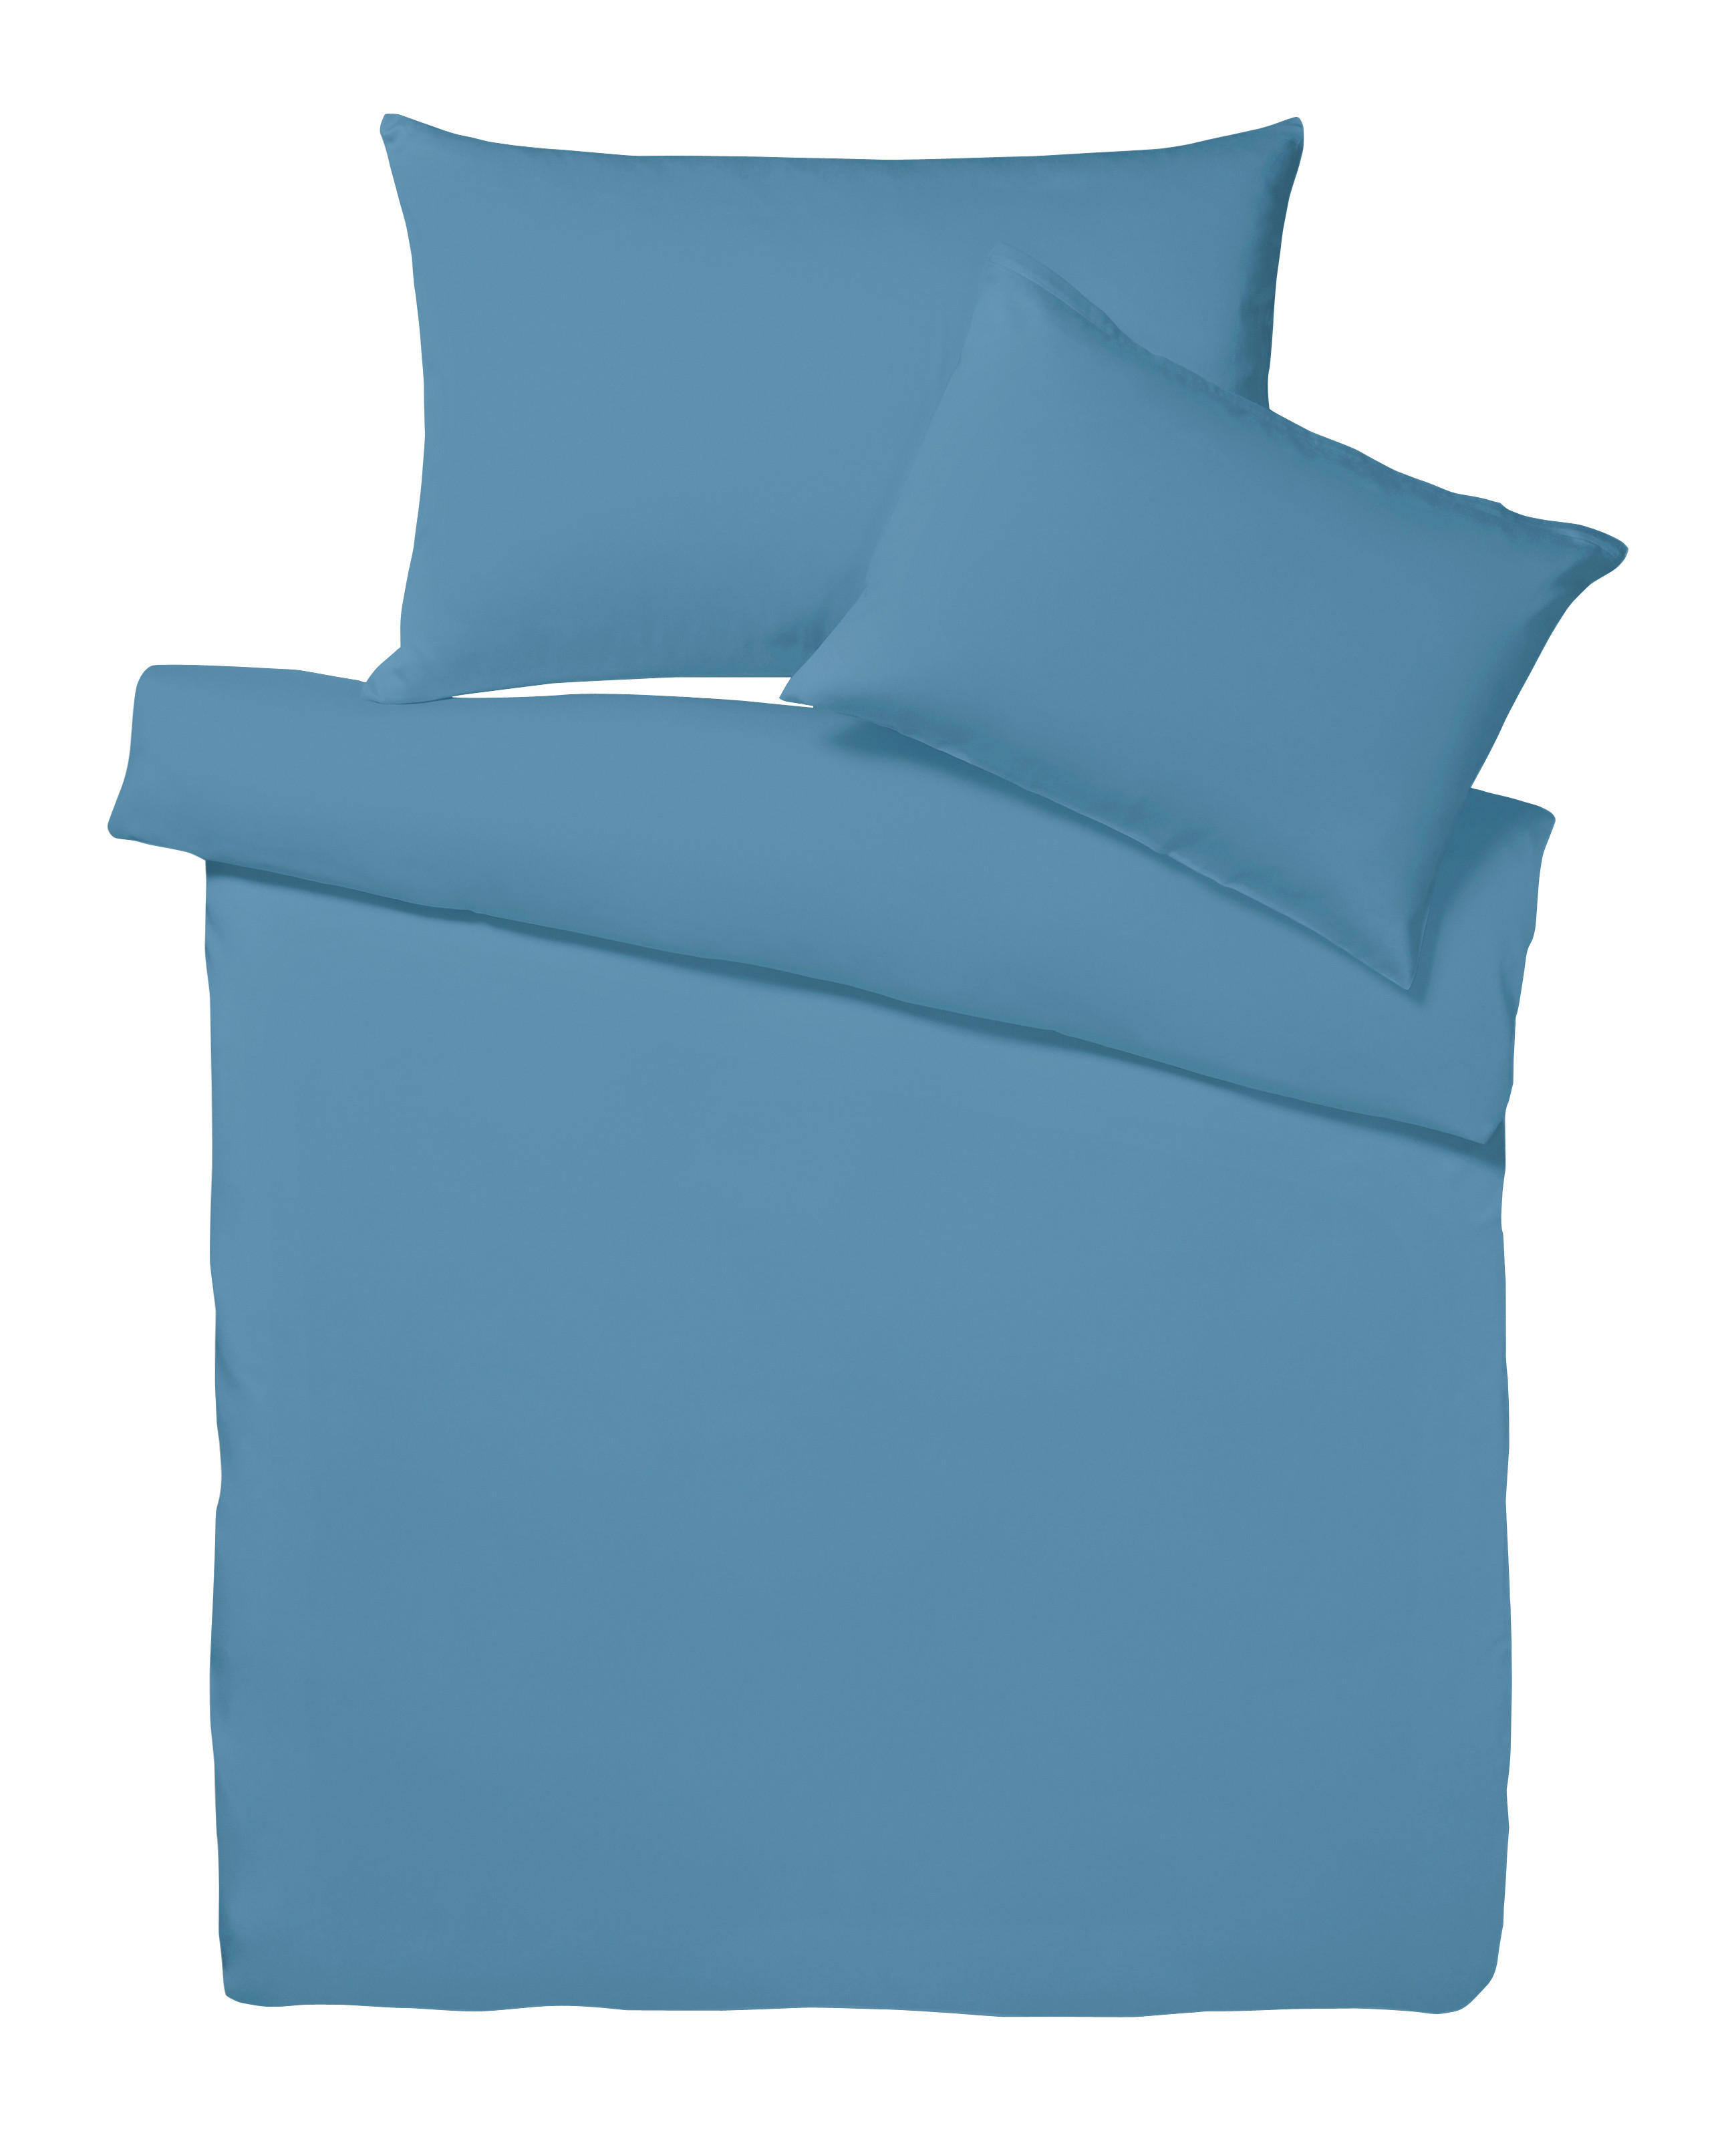 KOPFKISSENBEZUG 65/100 cm  - Blau, Basics, Textil (65/100cm) - Dieter Knoll